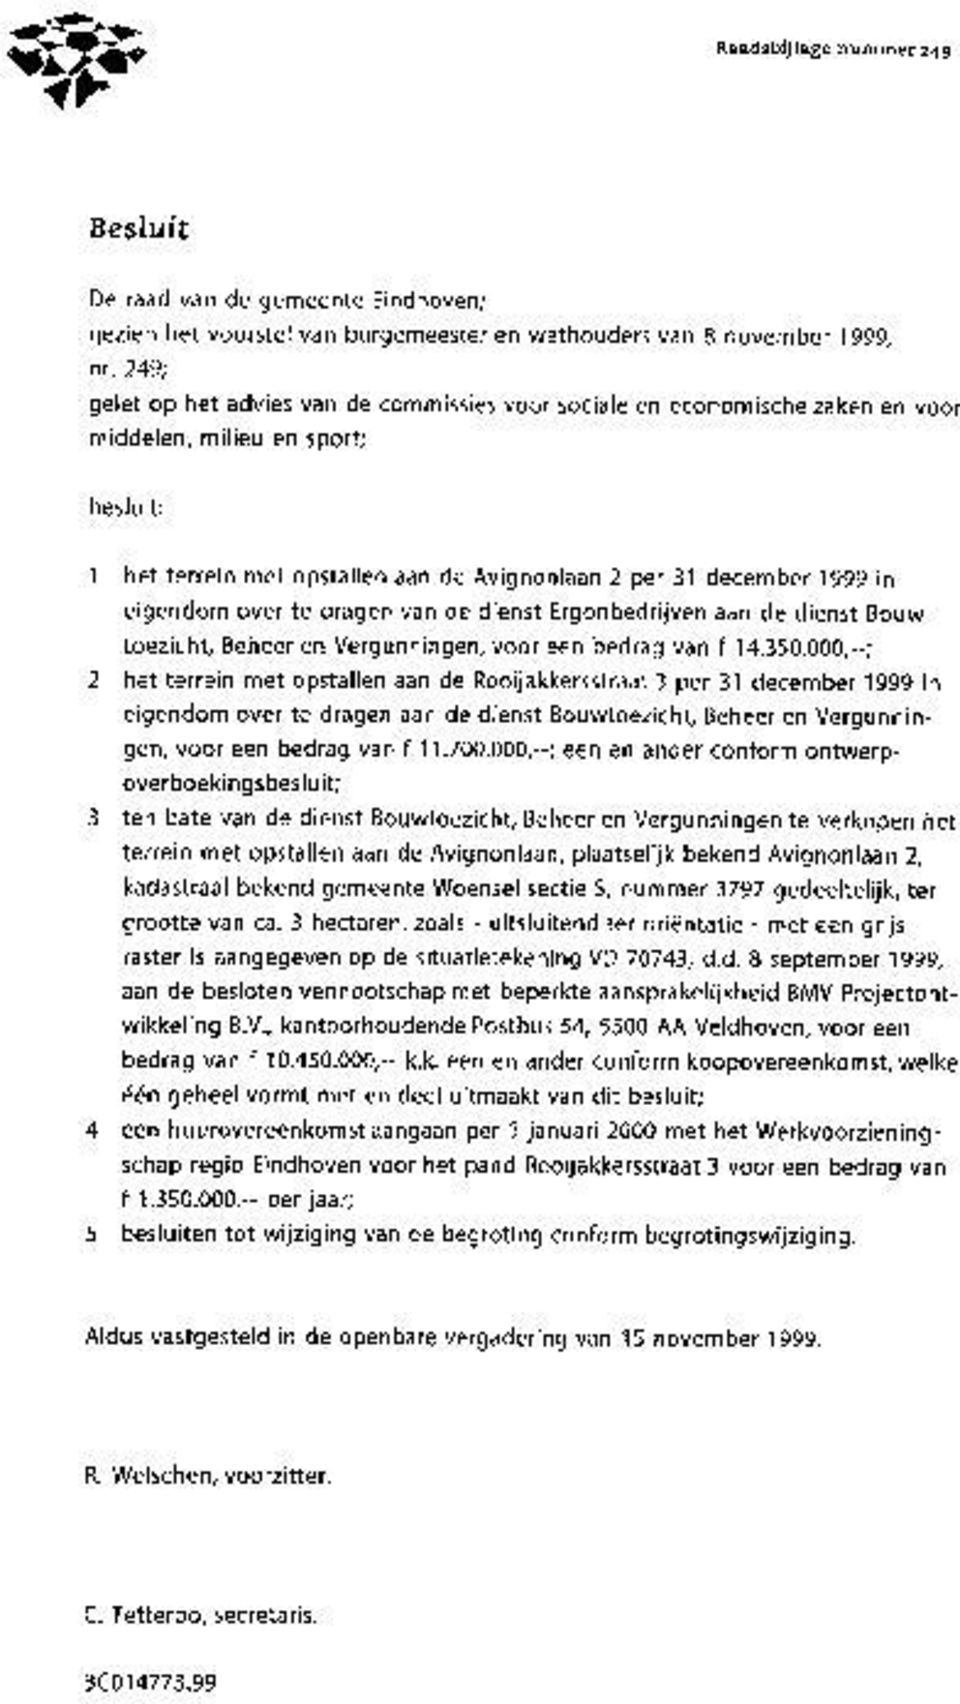 eigendom over te dragen van de dienst Ergonbedrijven aan de dienst Bouwtoezicht, Beheer en Vergunningen, voor een bedrag van f 14.350.